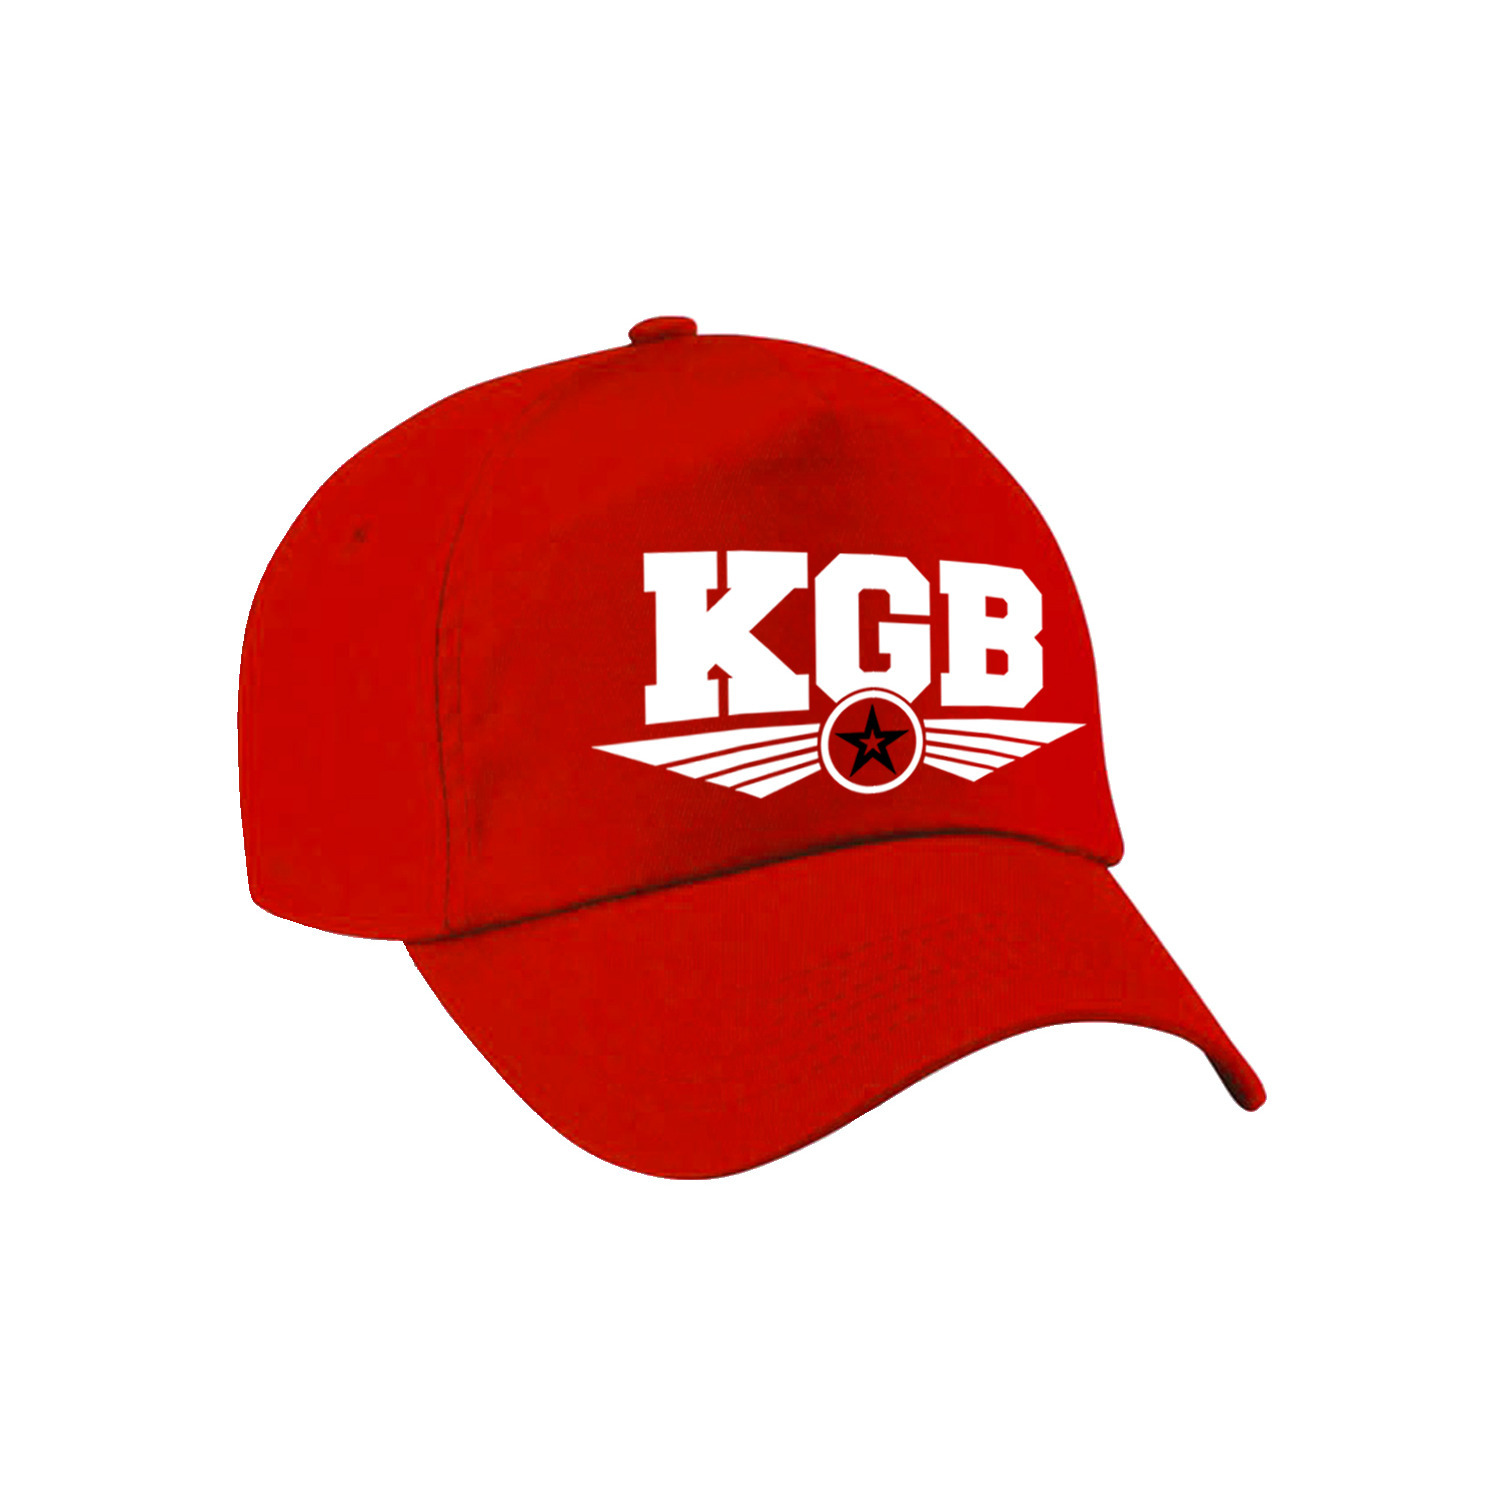 KGB agent tekst pet-baseball cap rood voor kinderen